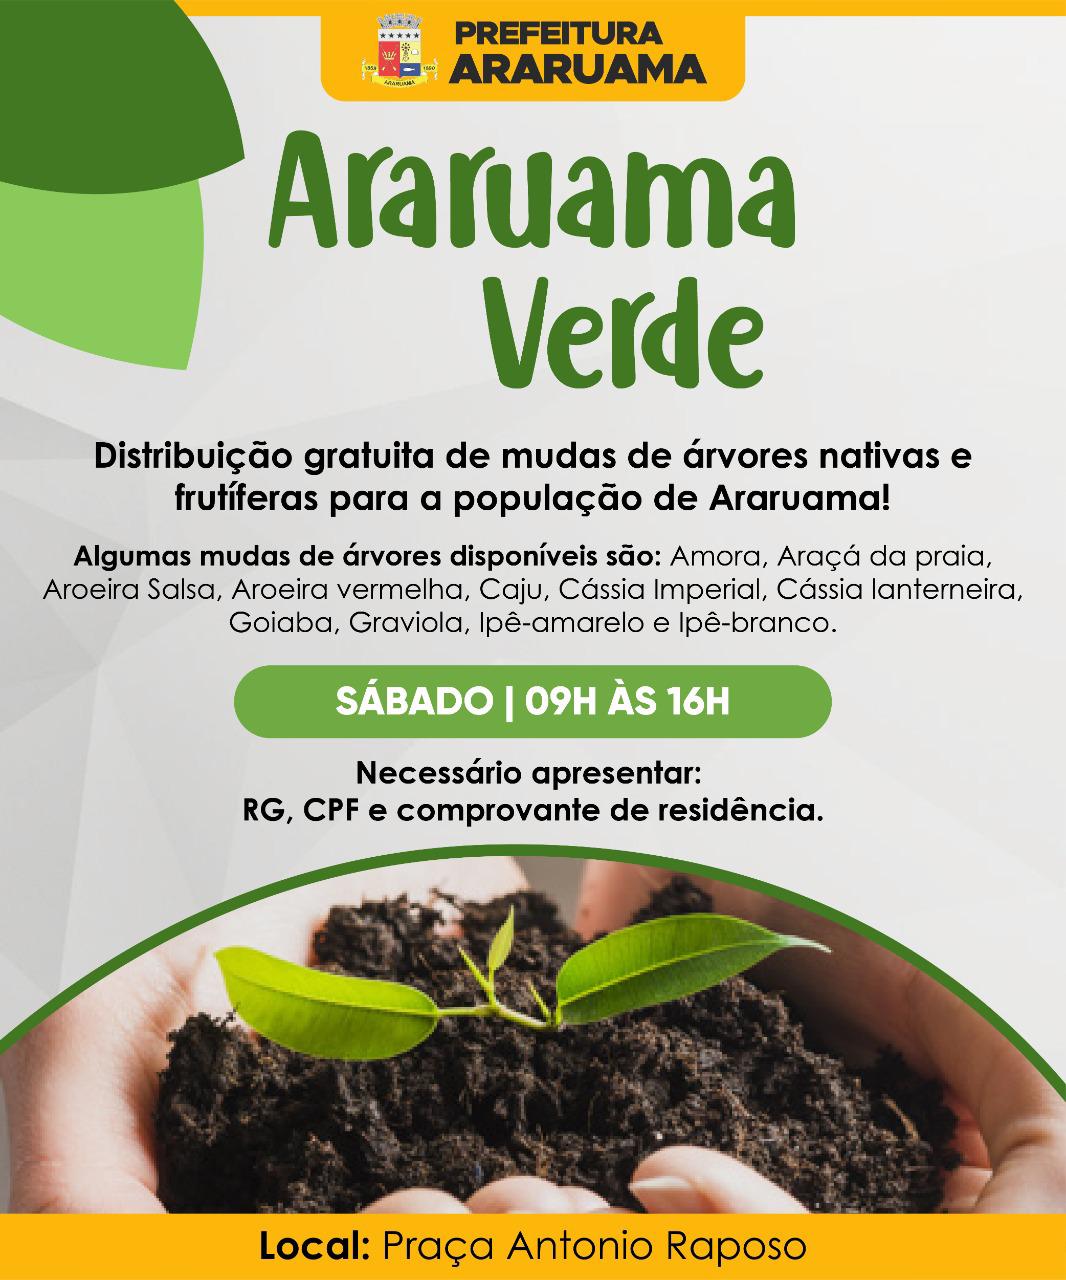 Prefeitura vai realizar a distribuição gratuita de mudas à população, com o projeto Araruama Verde